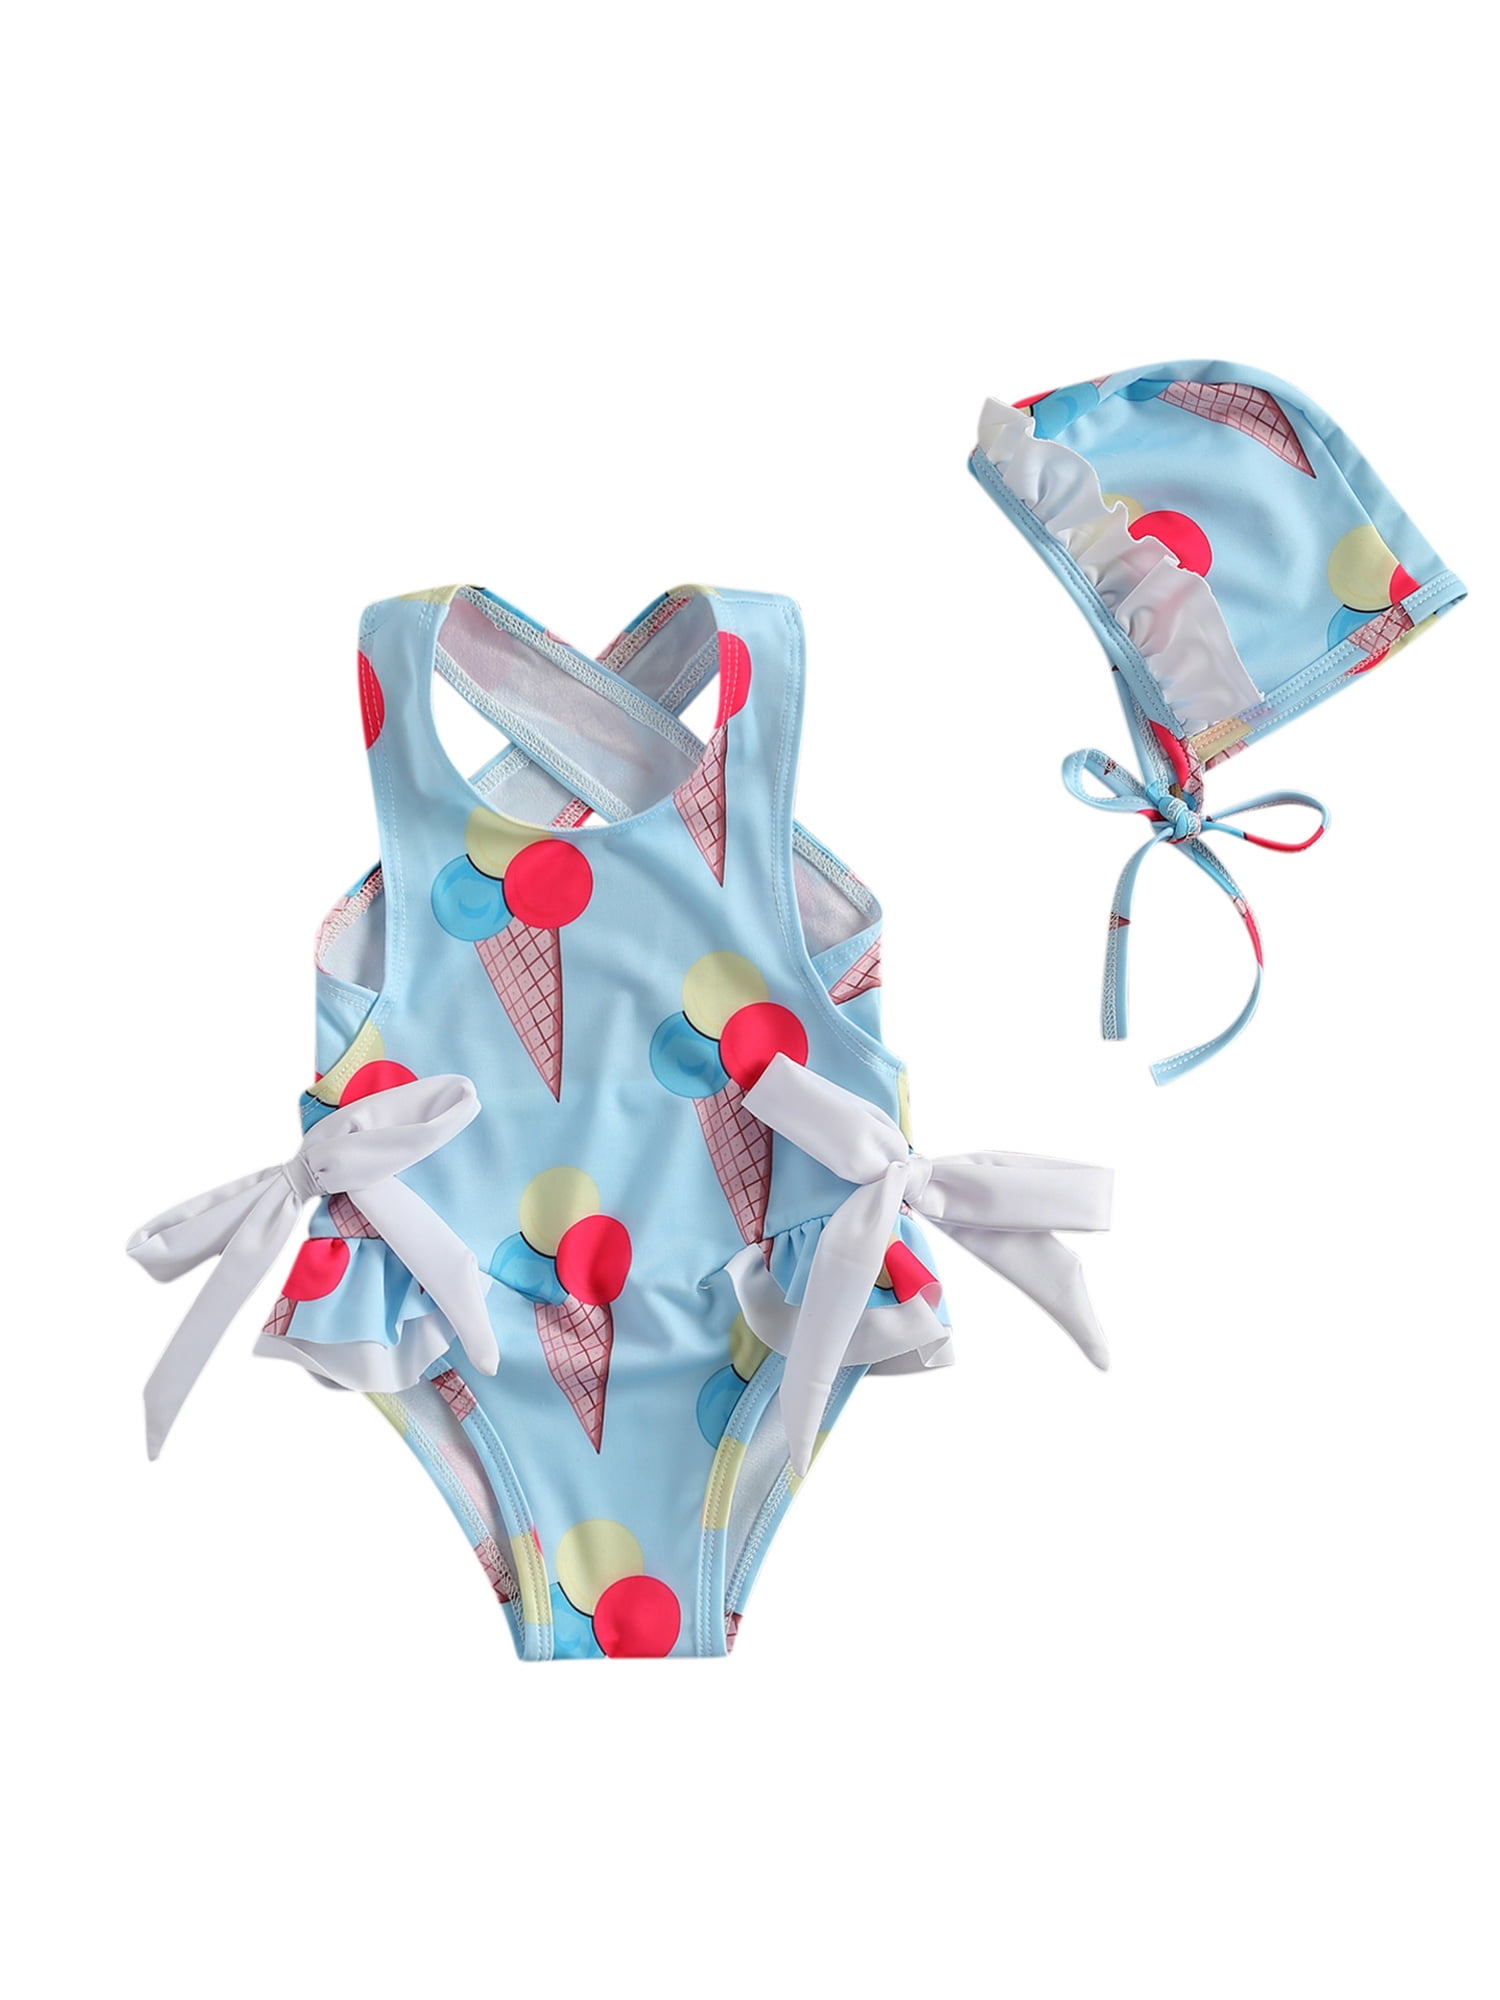 JanLEESi Baby Girl Swimsuit Bathing Suit Rompers